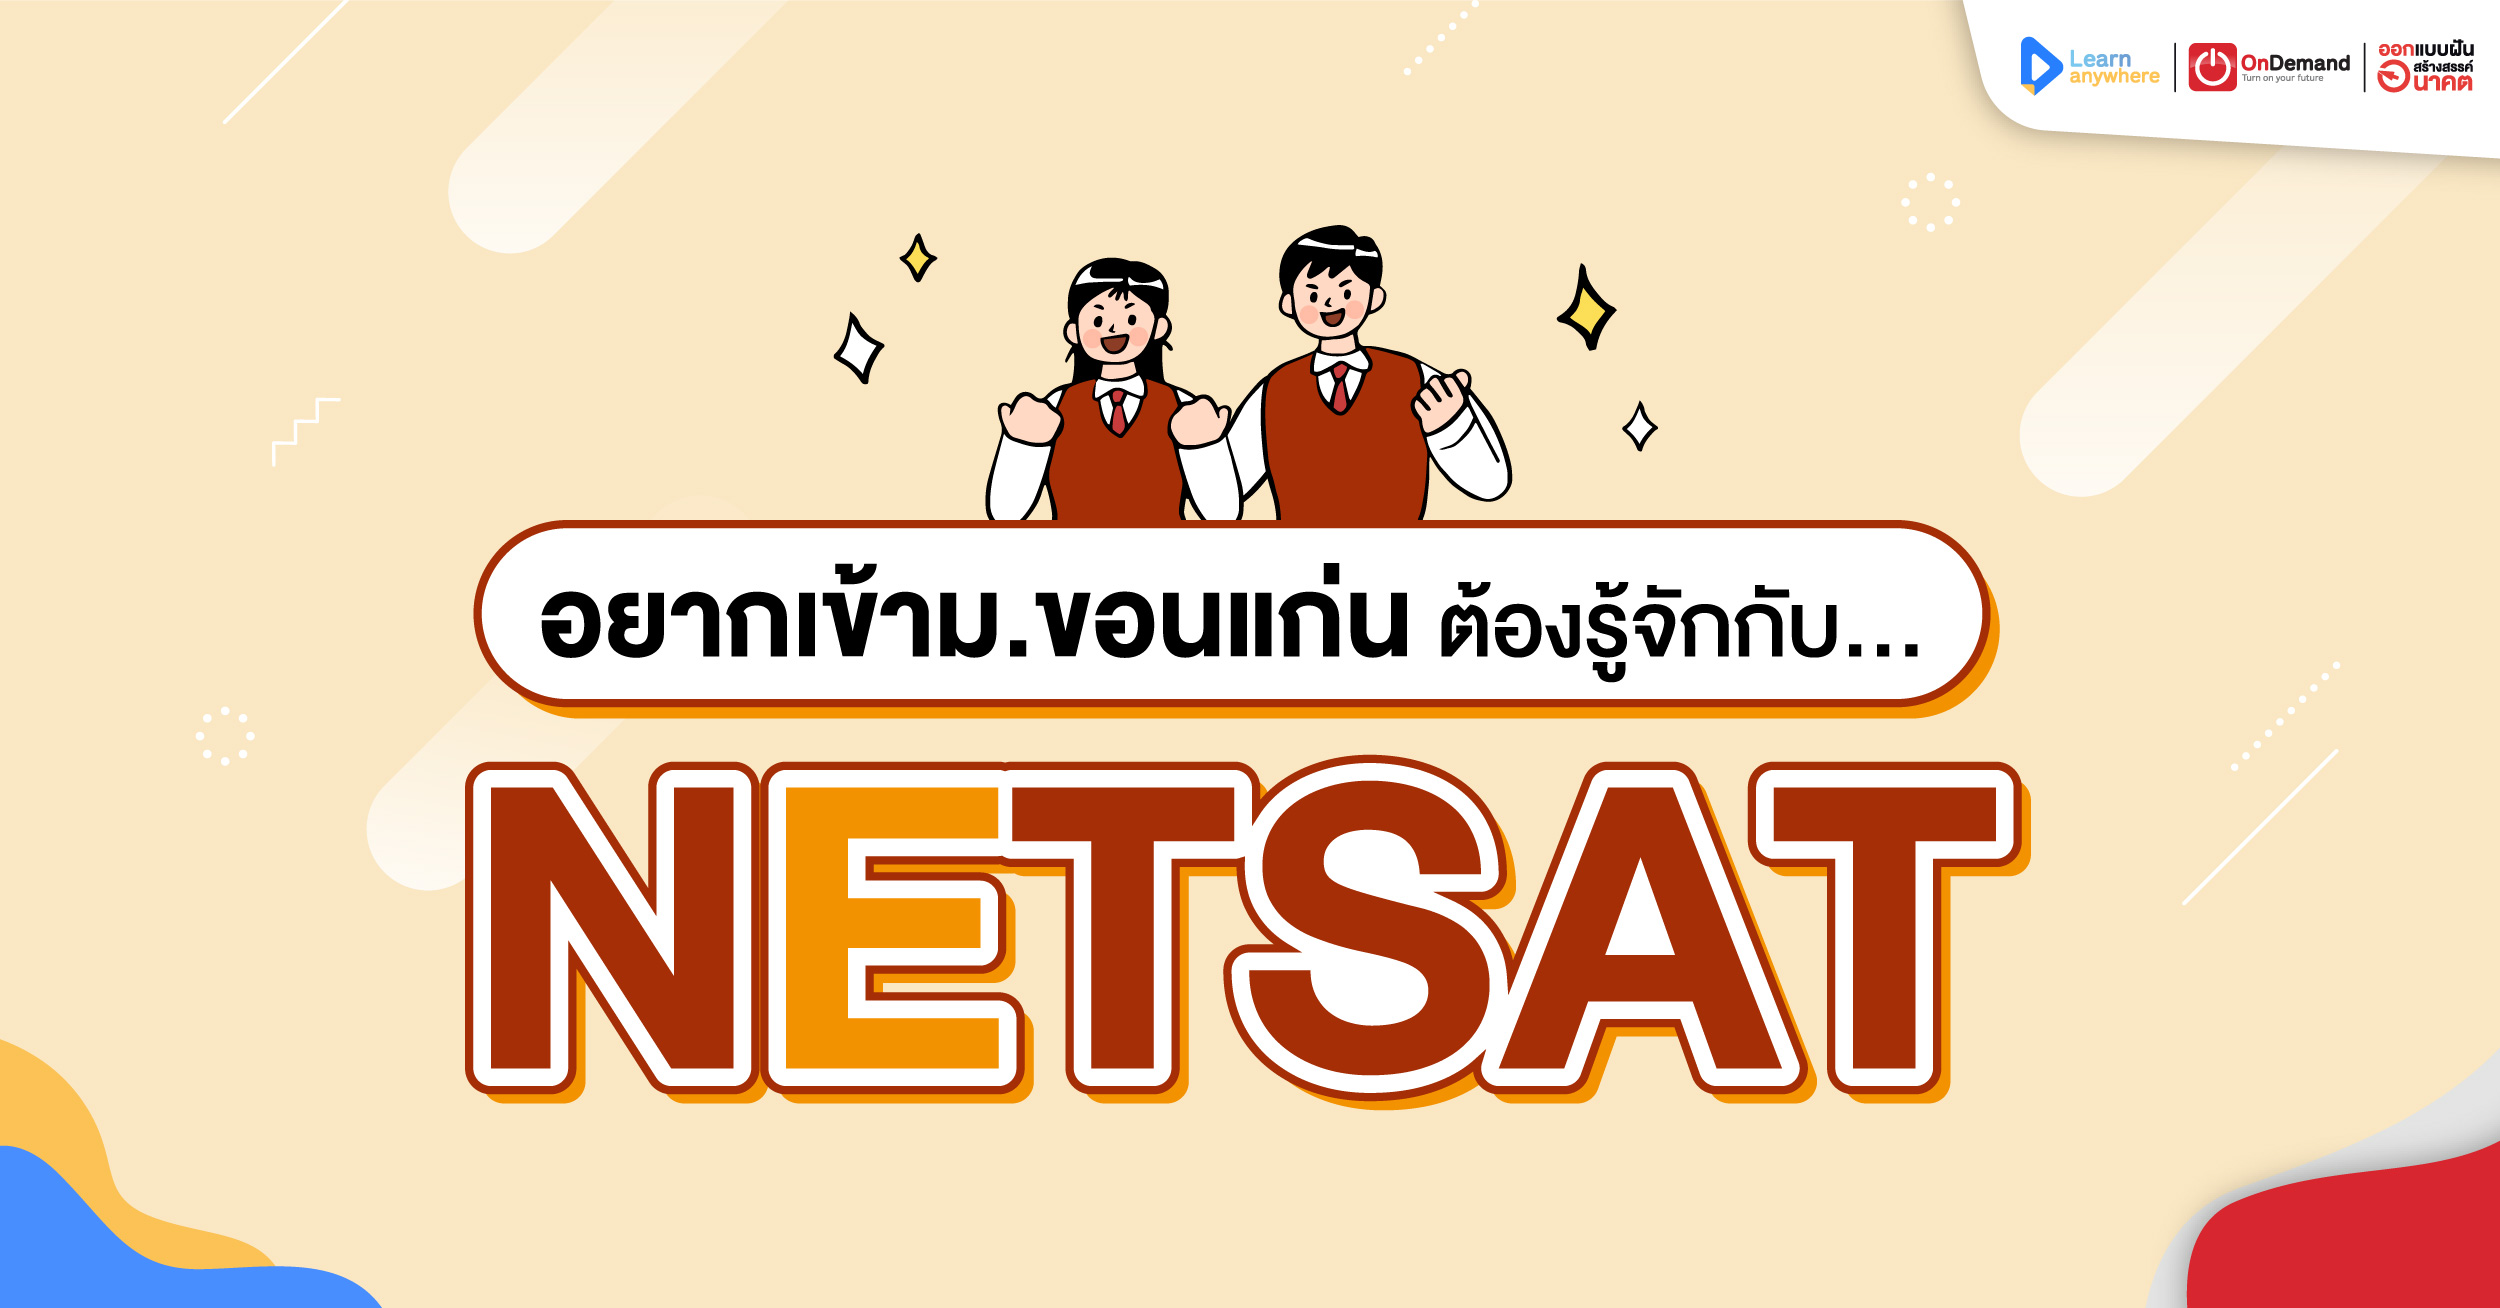 Netsat คืออะไร ? ทำไมอยากเข้า ม.ขอนแก่น ต้องรู้จักการสอบนี้ - Ondemand